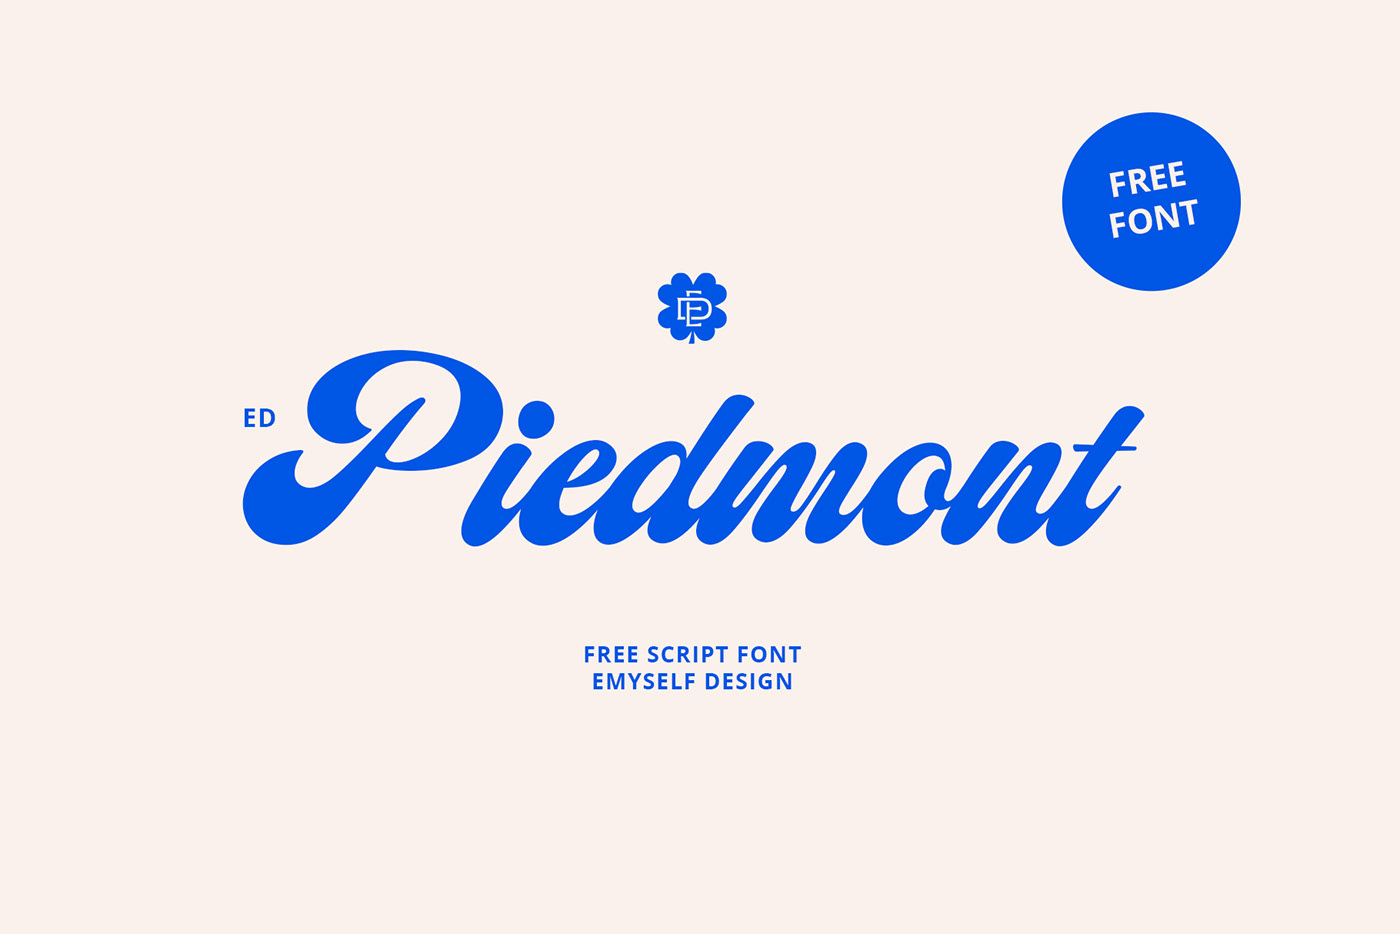 ED Piedmont 美式英文粗体手写字体 设计素材 第1张